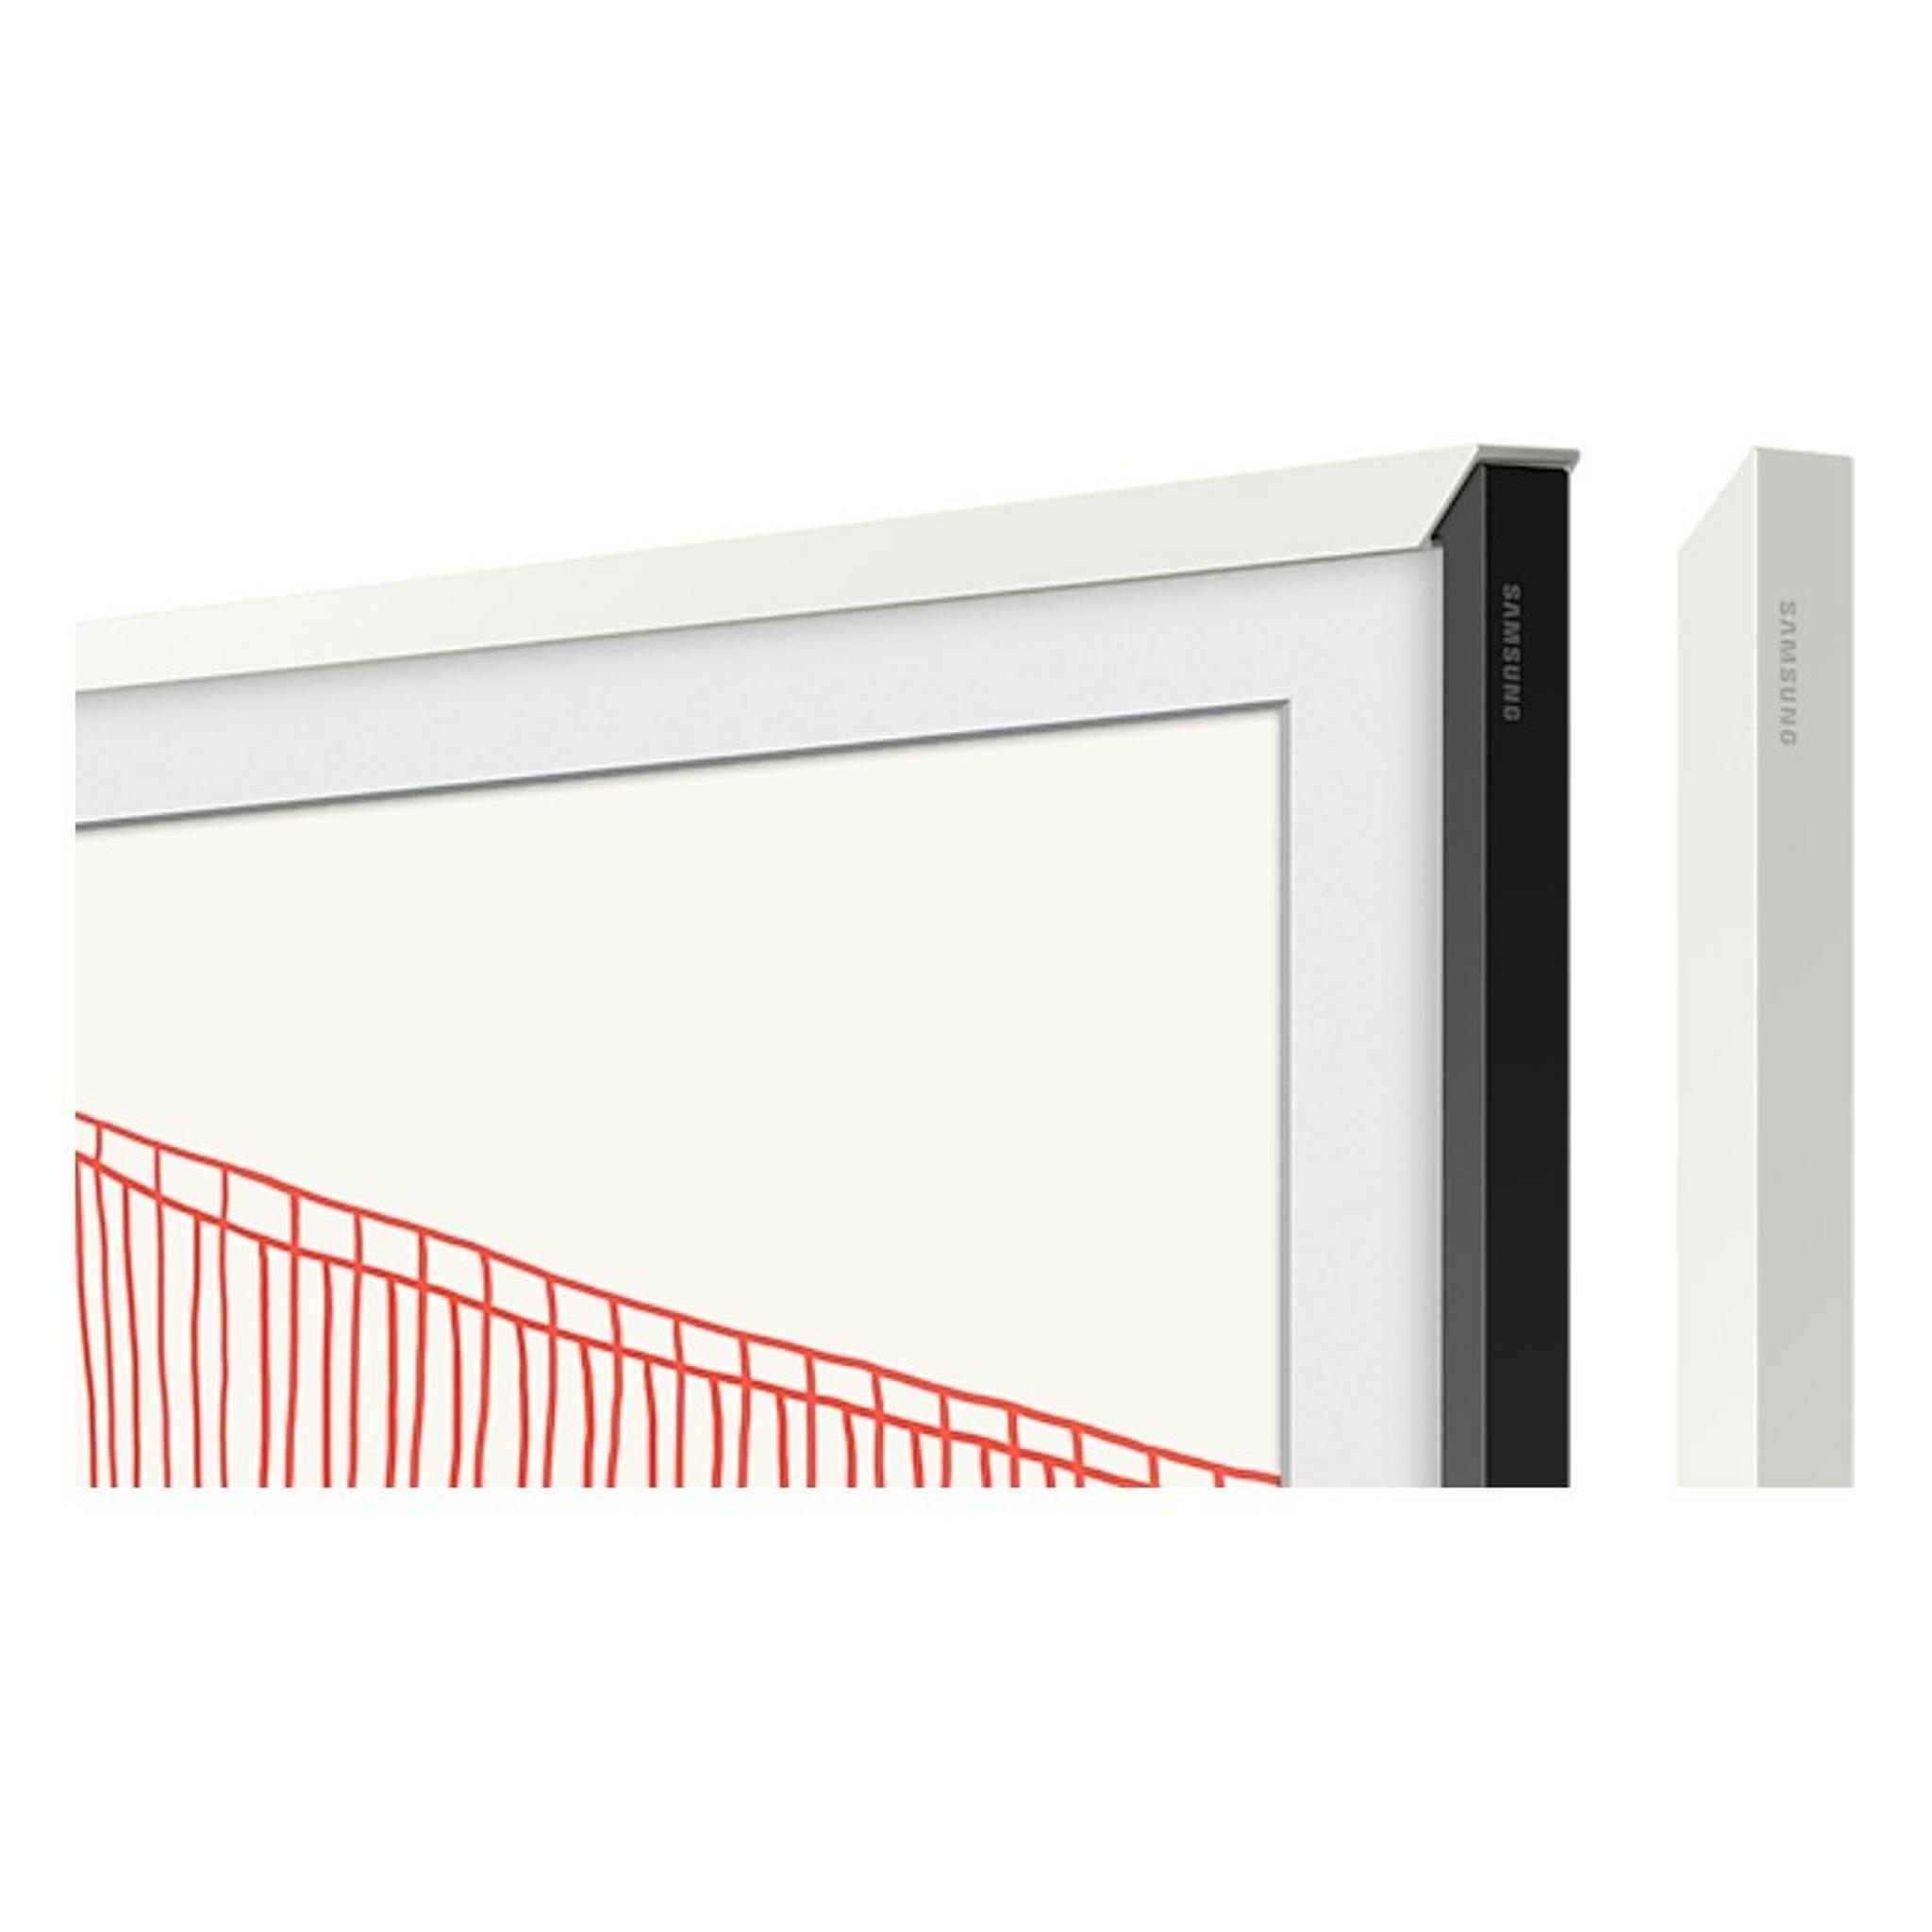 Samsung 55 Inch Customizable Frame for The Frame TV (White) | VG-SCFA55WTBRU